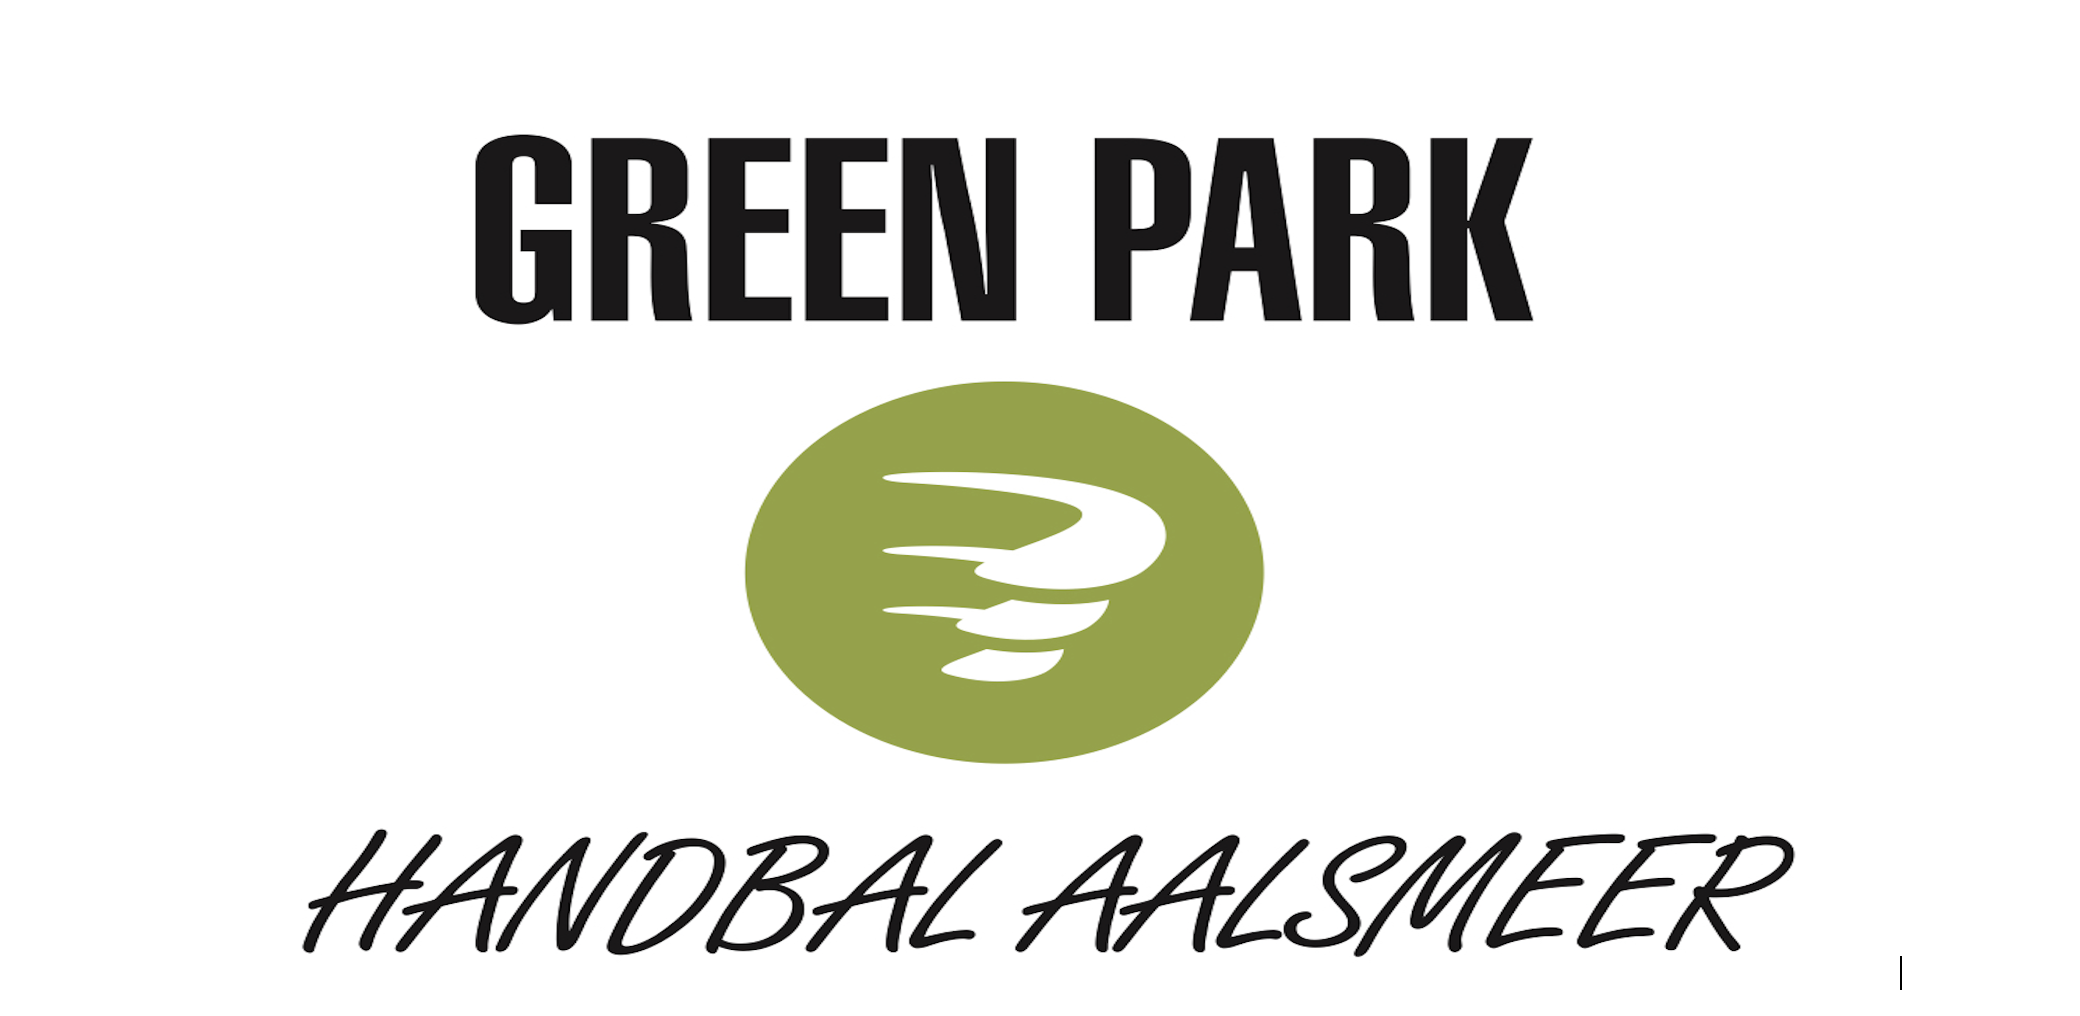 BetCity.nl is de nieuwe sponsor van Green Park Handbal Aalsmeer